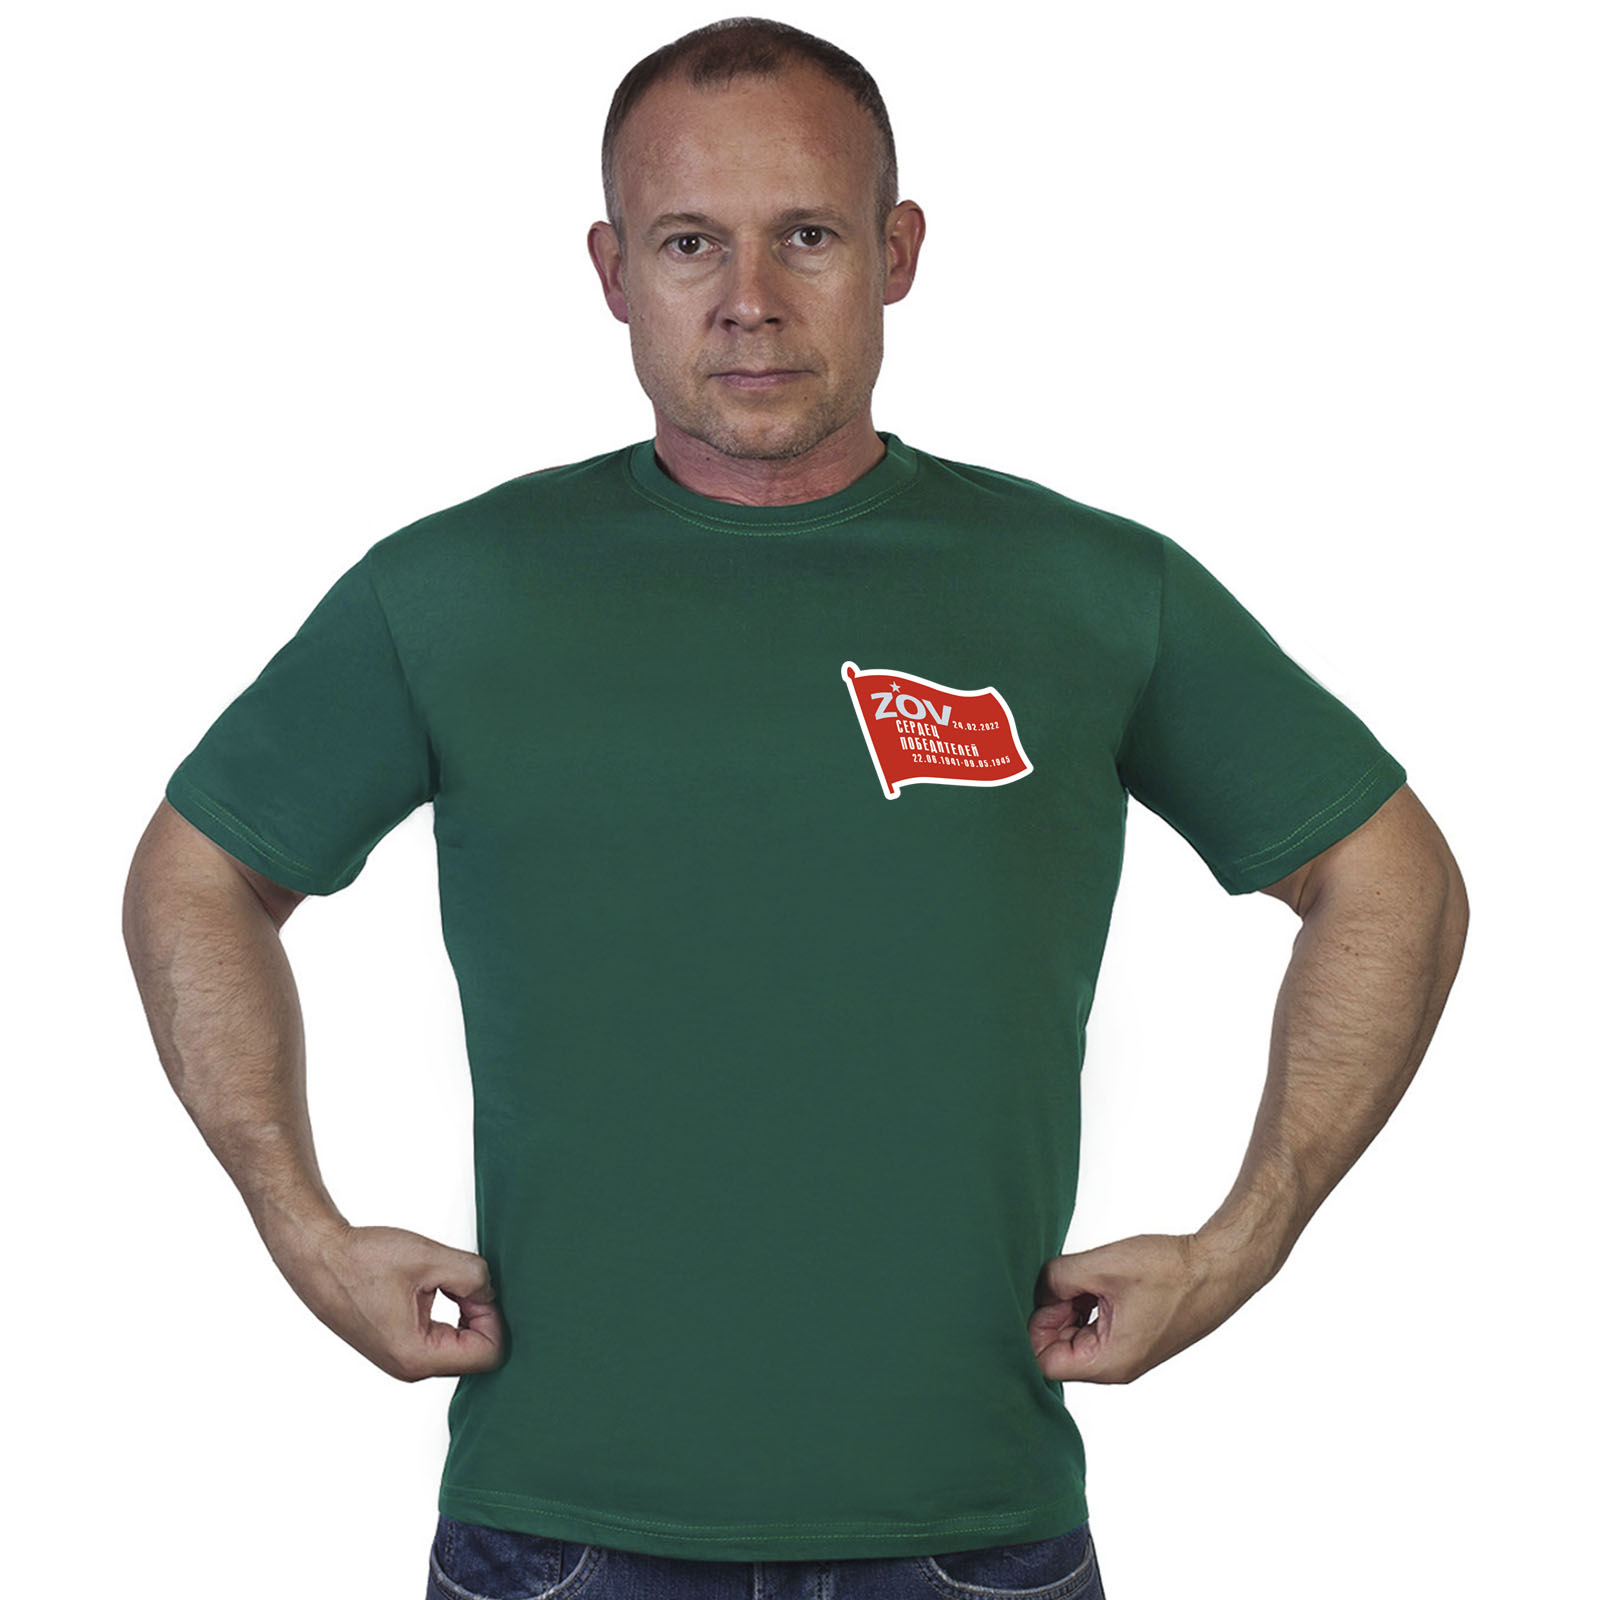 Зелёная футболка с термотрансфером "ZOV сердец победителей"